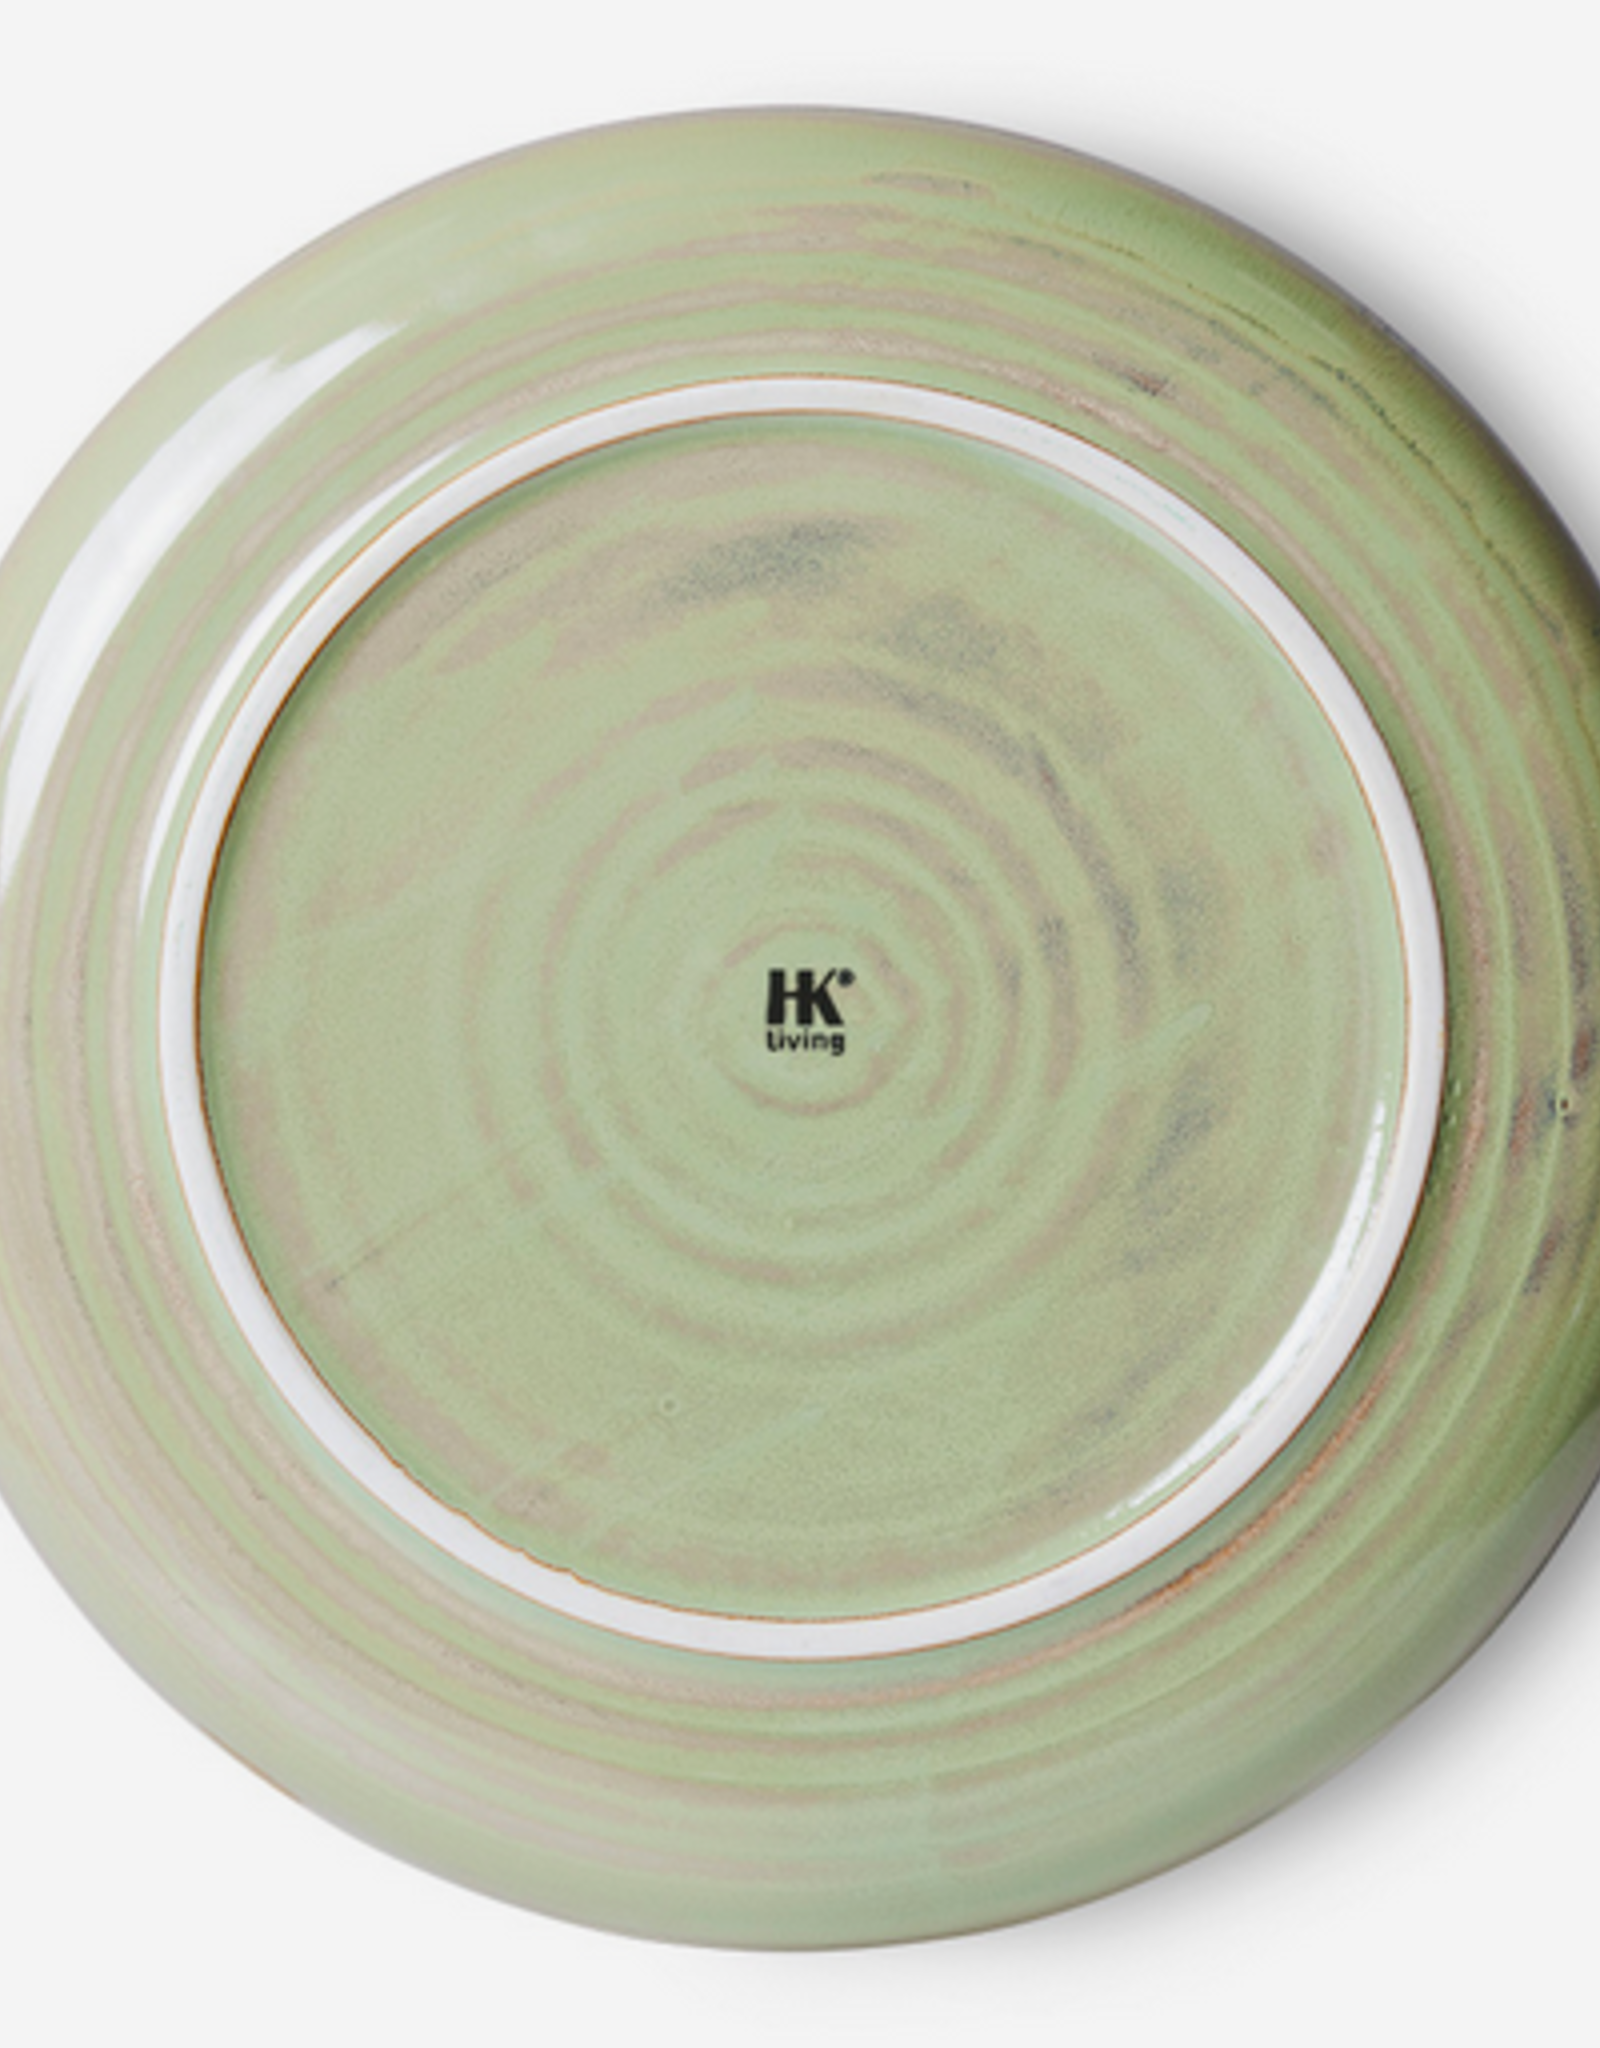 HK Living Chef ceramics: dinner plate, moss green